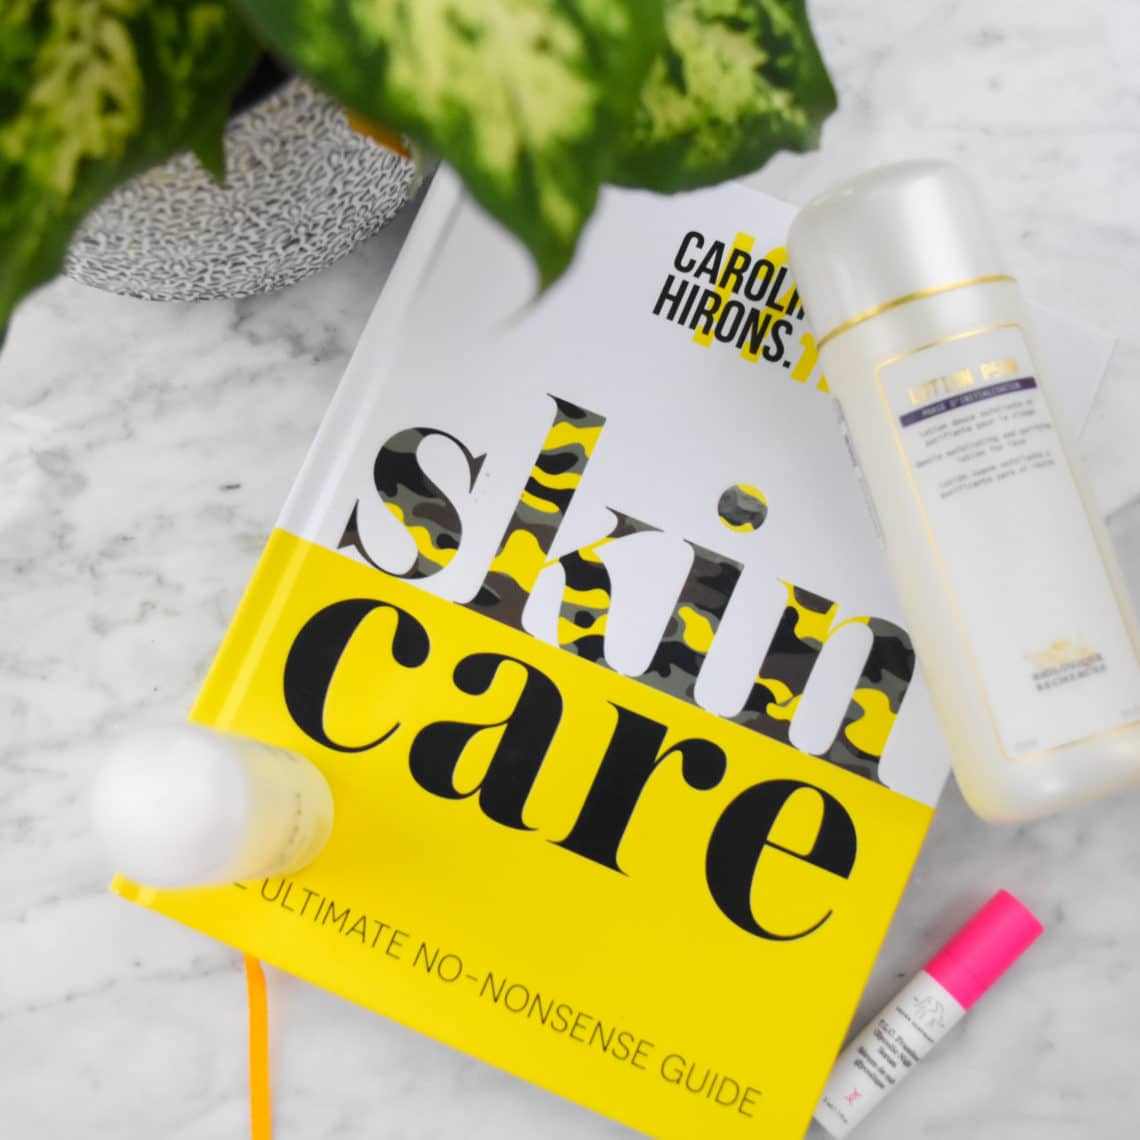 Skin Care The Ultimate No Nonsense Guide